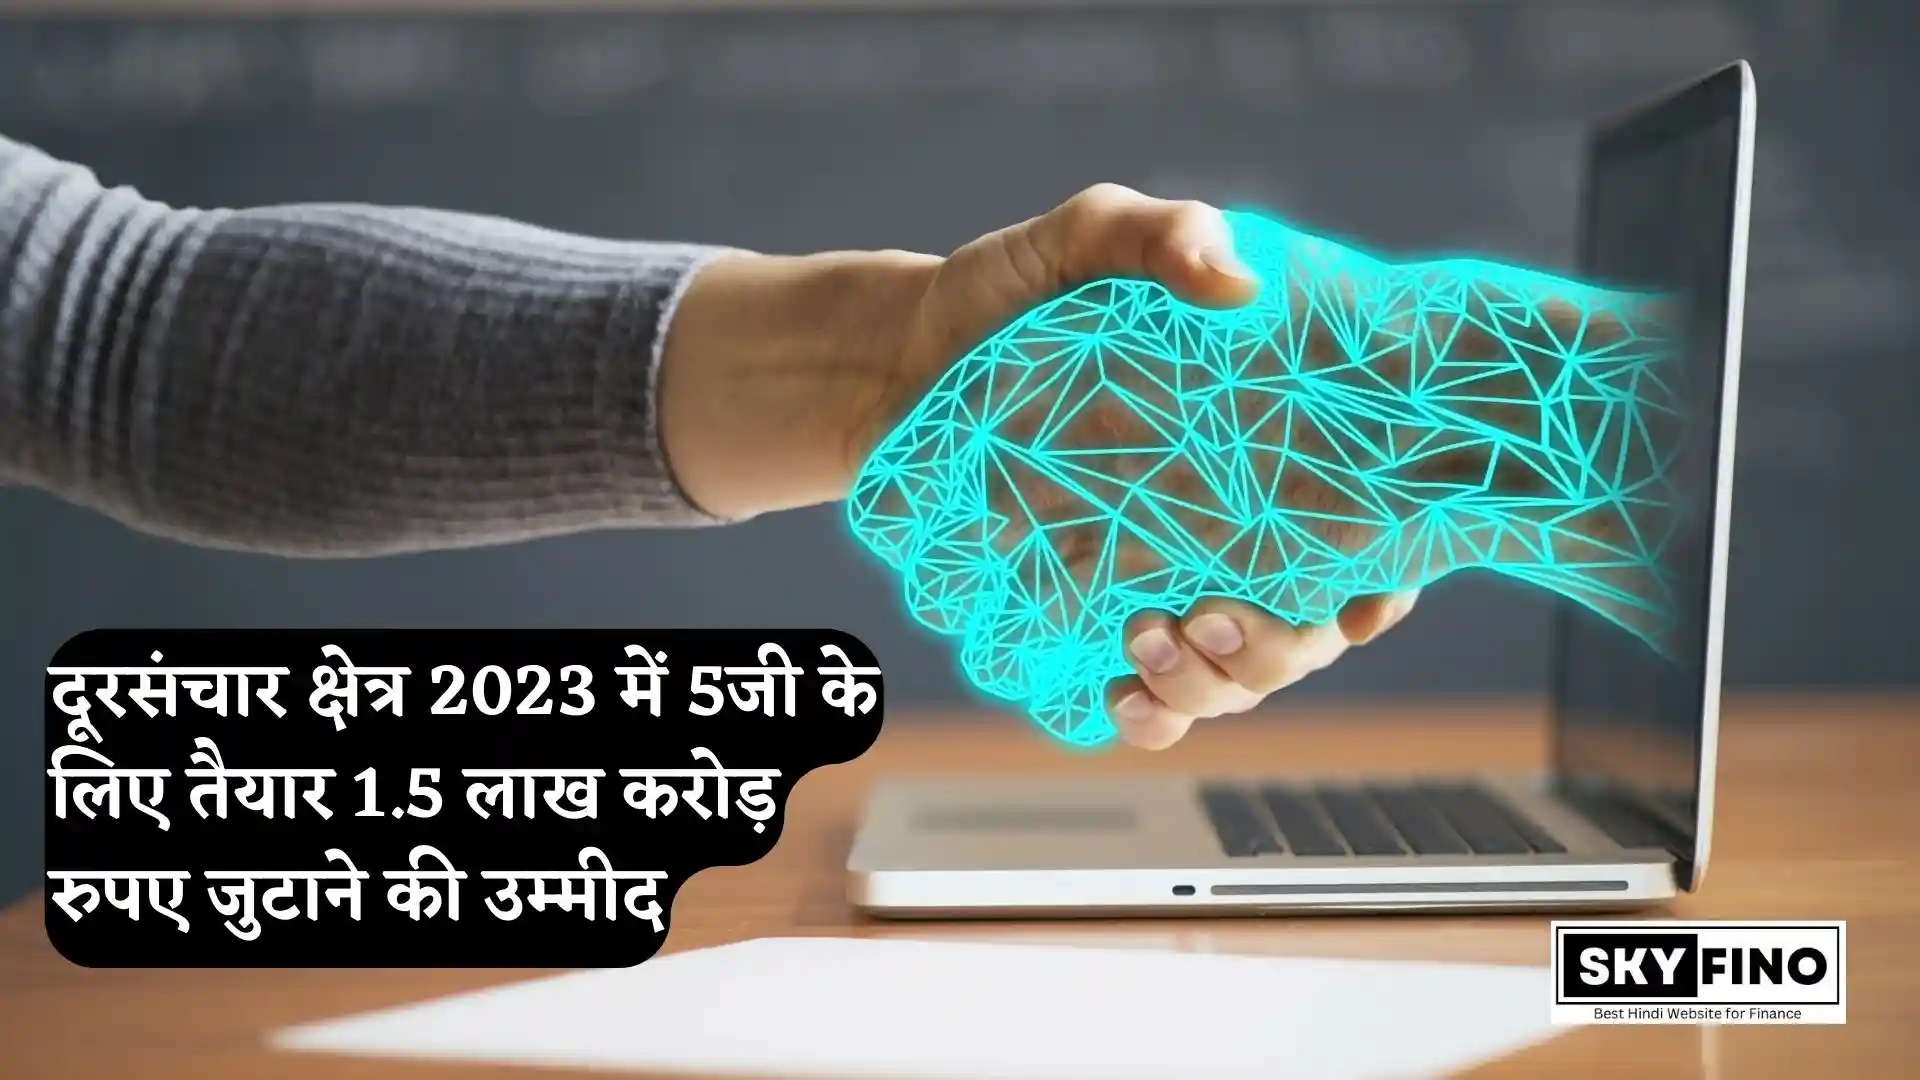 दूरसंचार क्षेत्र 2023 में 5जी के लिए तैयार 1.5 लाख करोड़ रुपए जुटाने की उम्मीद